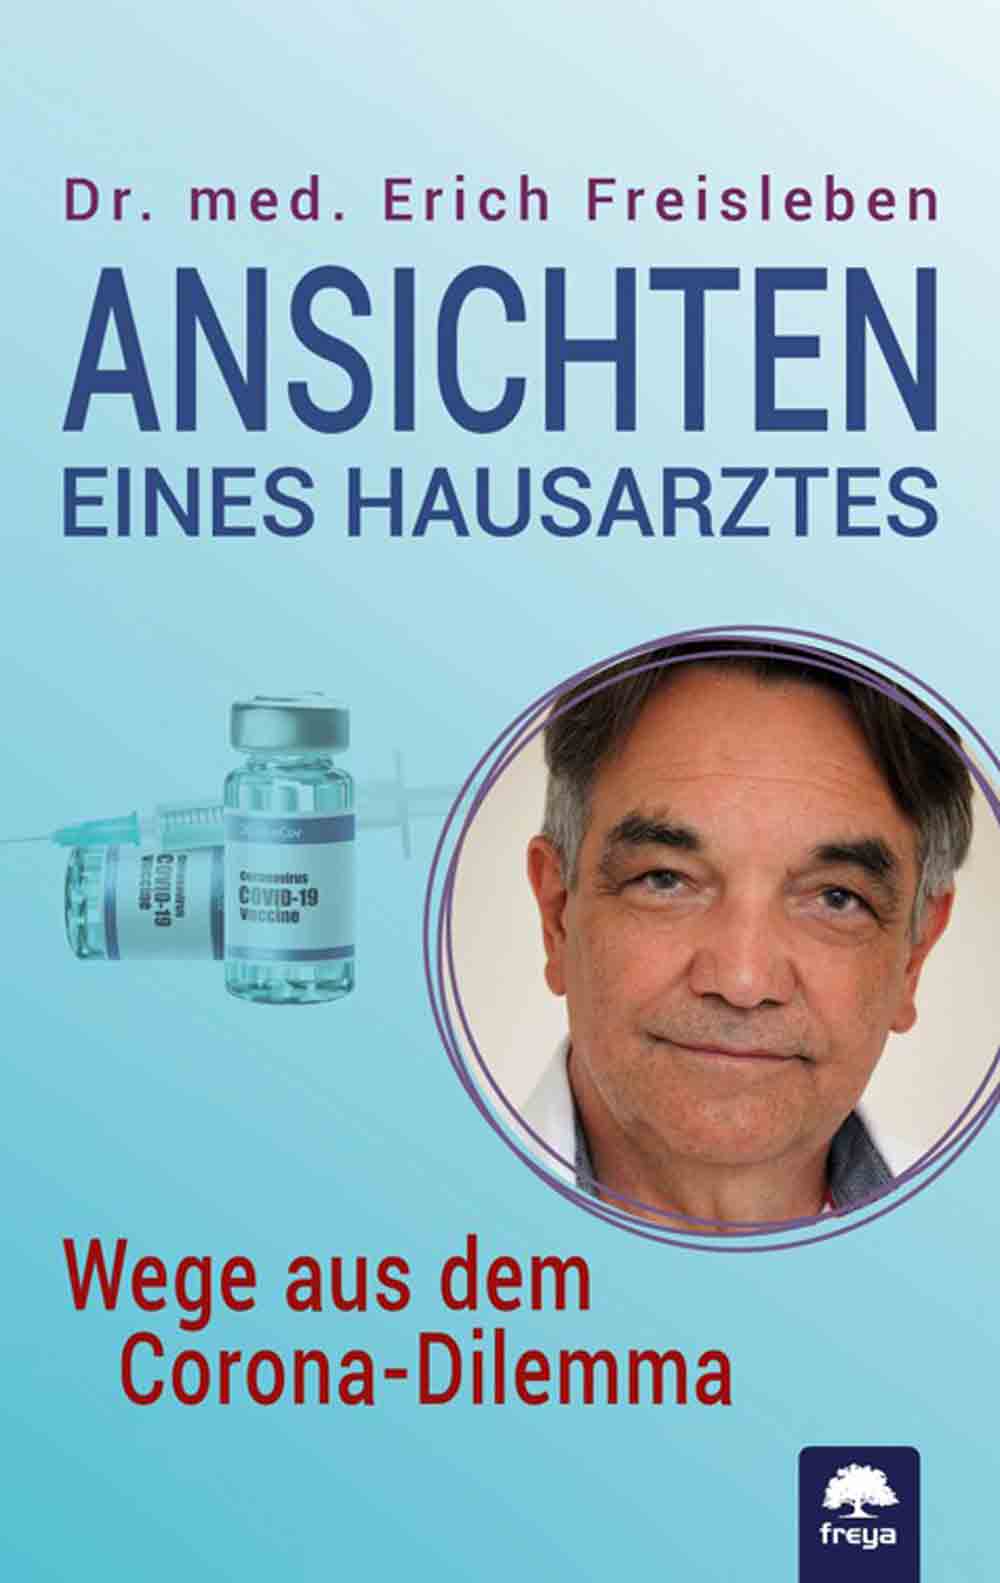 Anzeige: Lesetipps für Gütersloh: Dr. med. Erich Freisleben, »Ansichten eines Hausarztes«, online bestellen